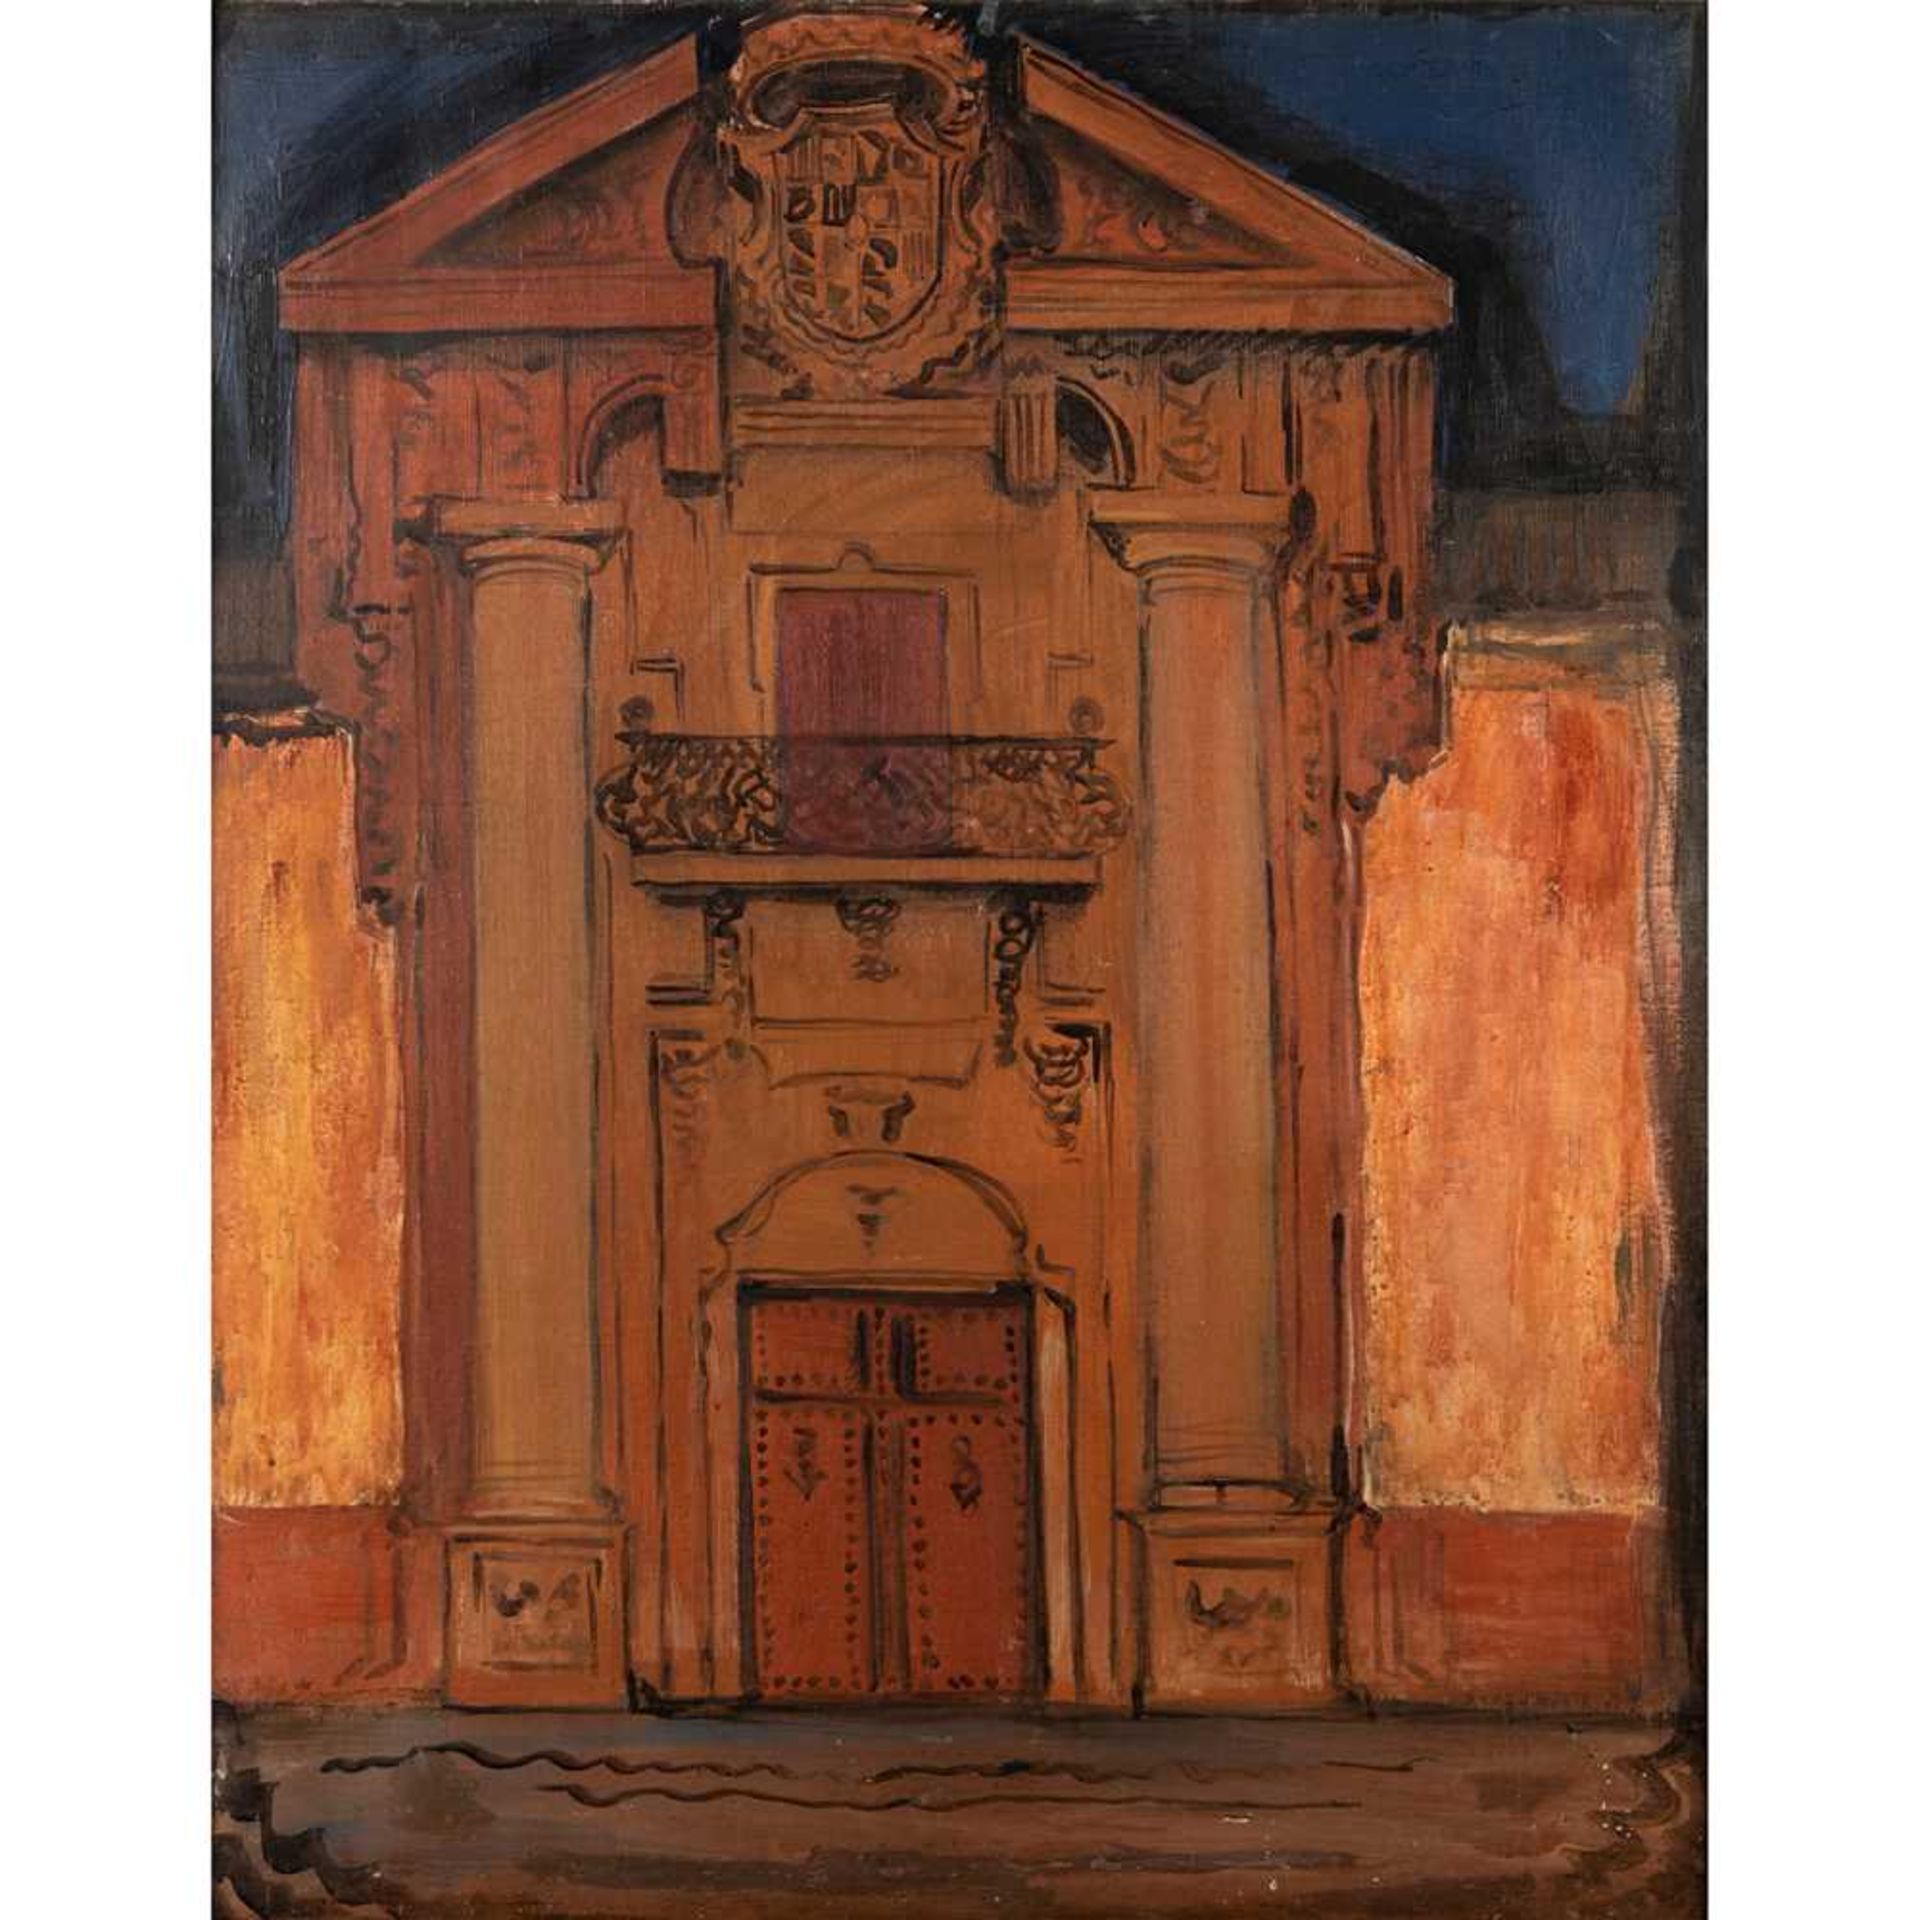 Ismael Gonzales de la Serna (Spanish 1898-1968) The Doorway, Venice, 1924